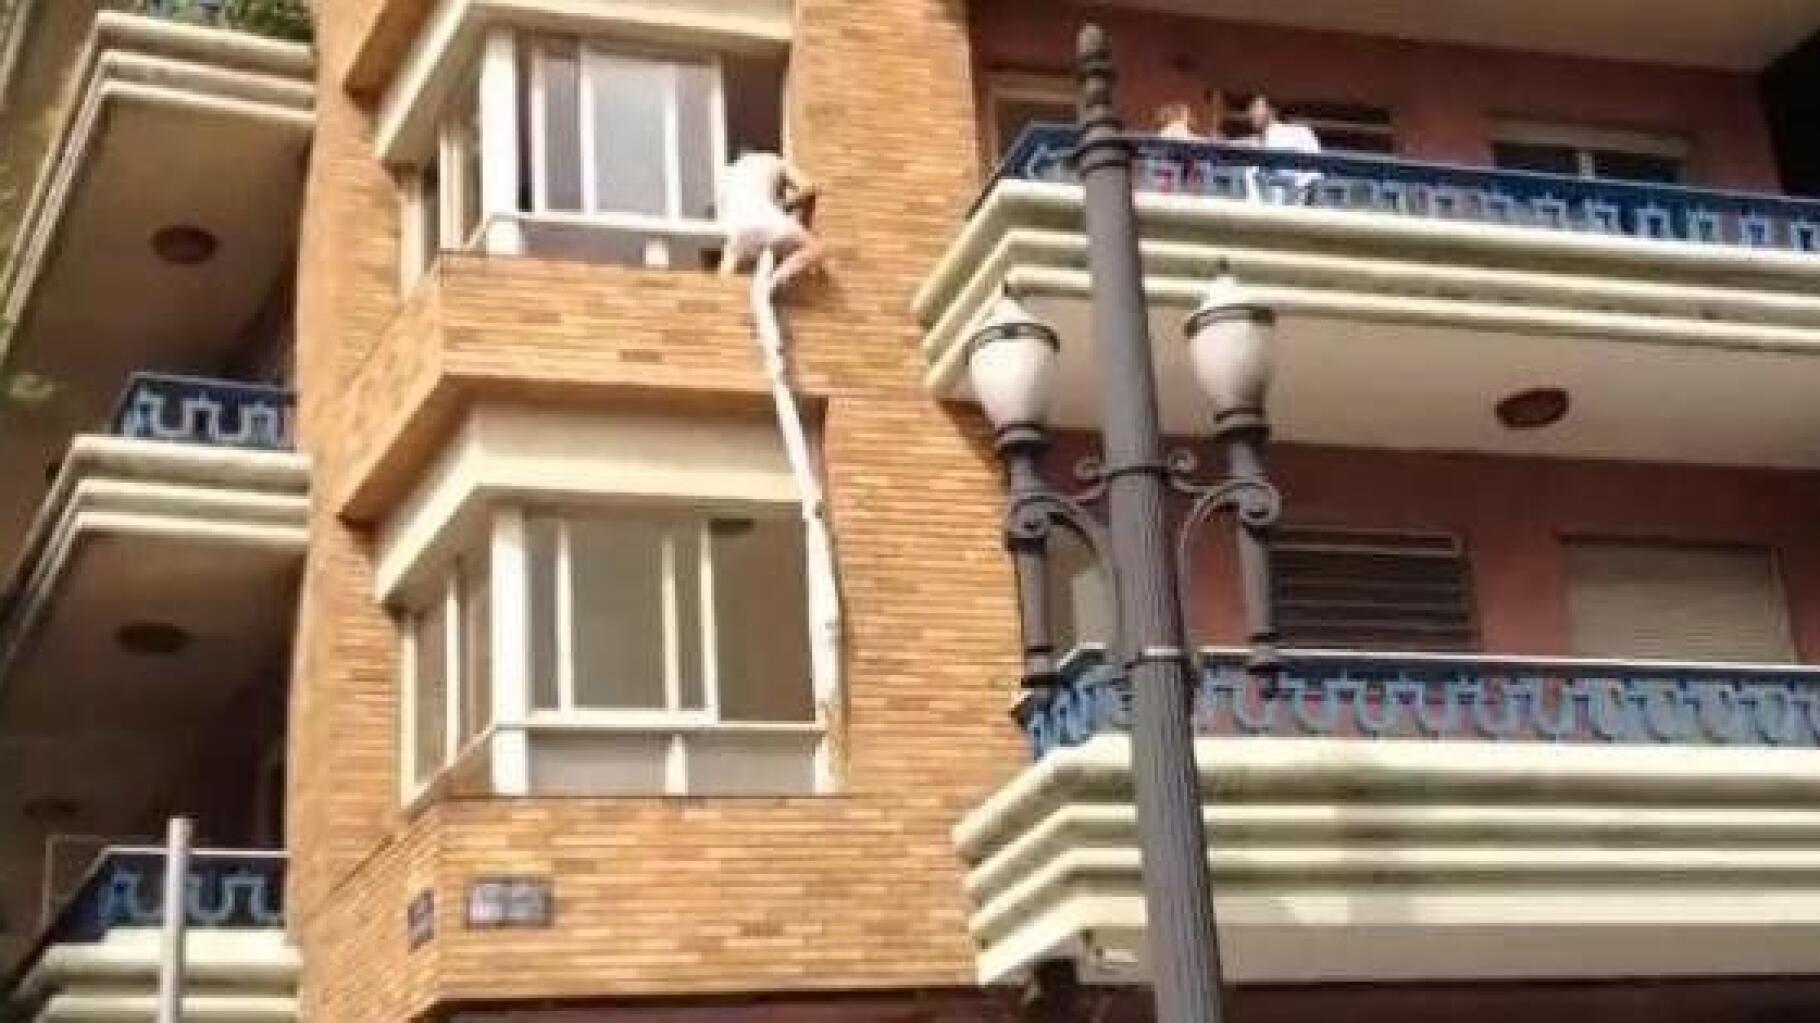 Une vidéo est apparue ! Un homme ligoté saute d'un balcon en feu avec son  lit